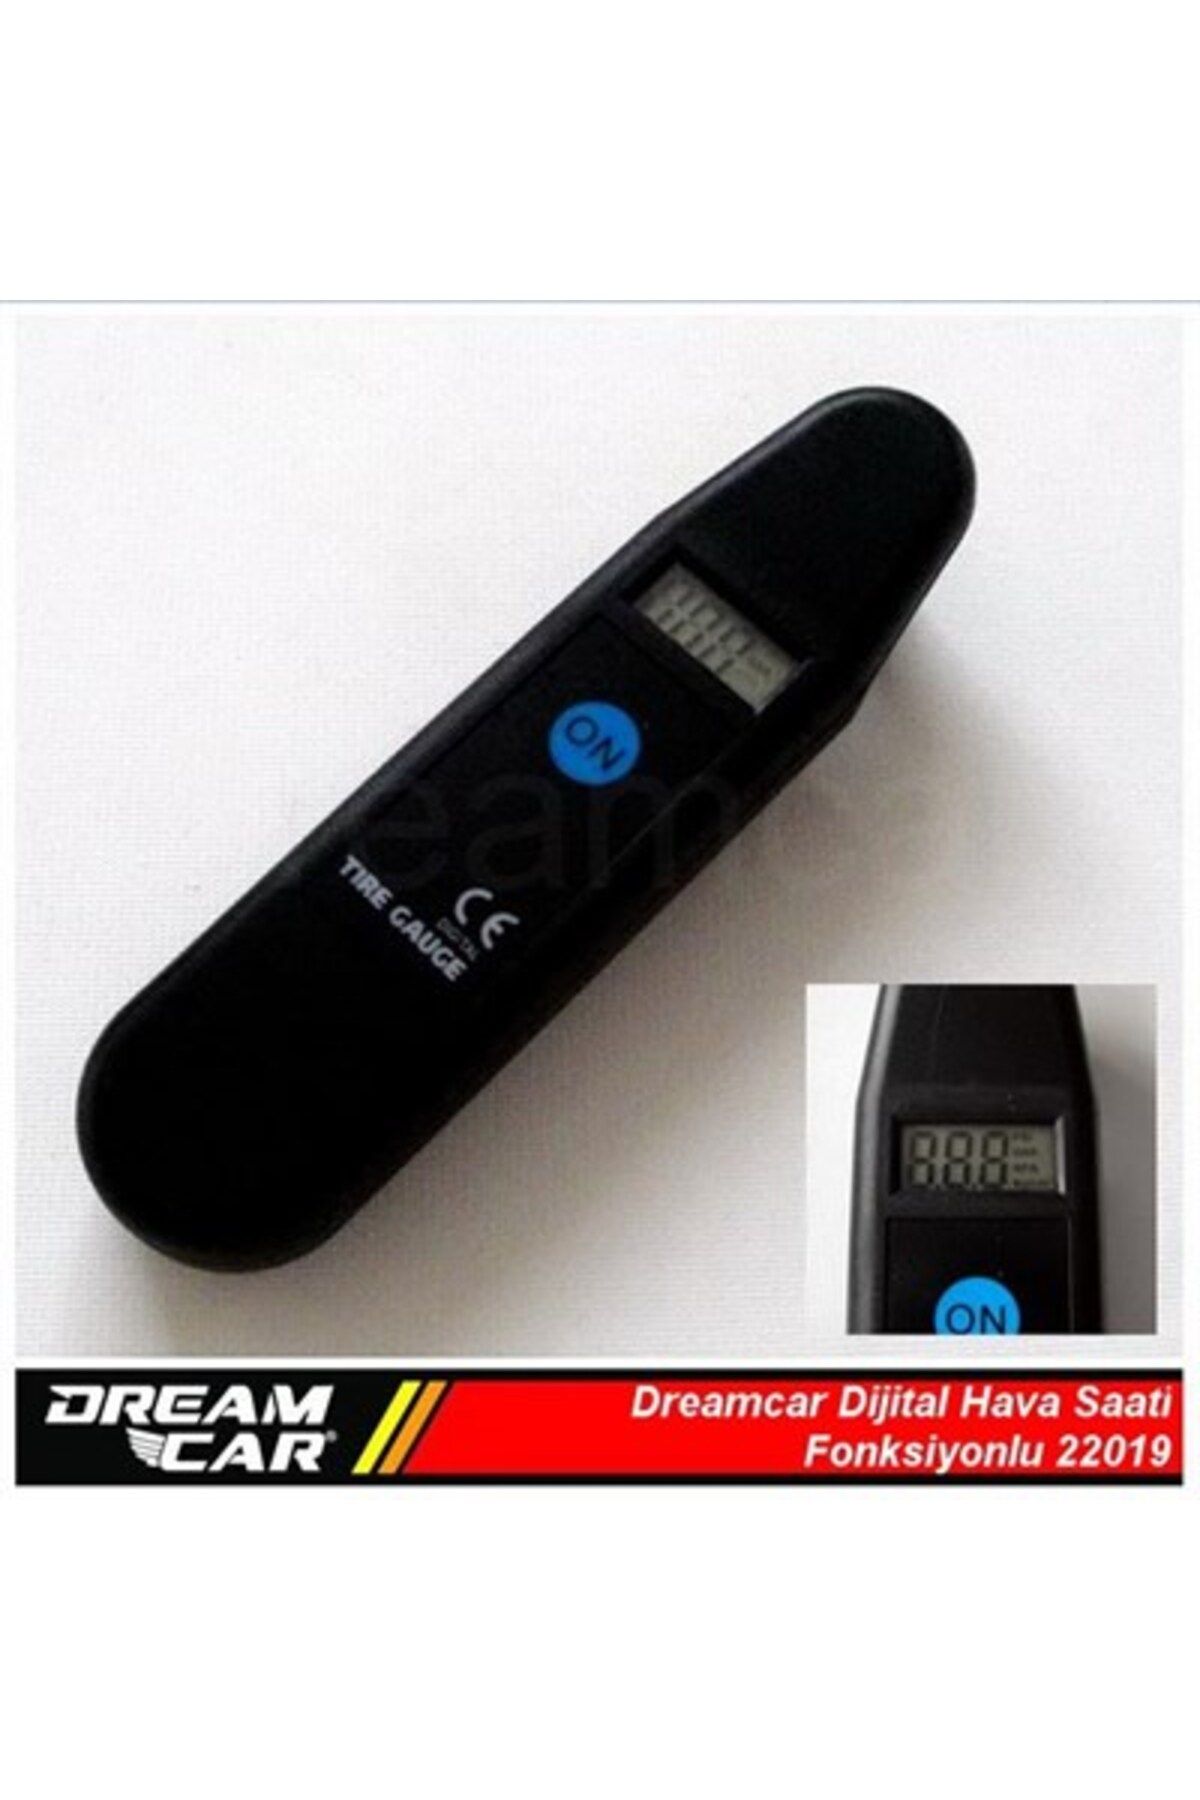 Dreamcar Dijital Hava Saati Fonksiyonlu 22019